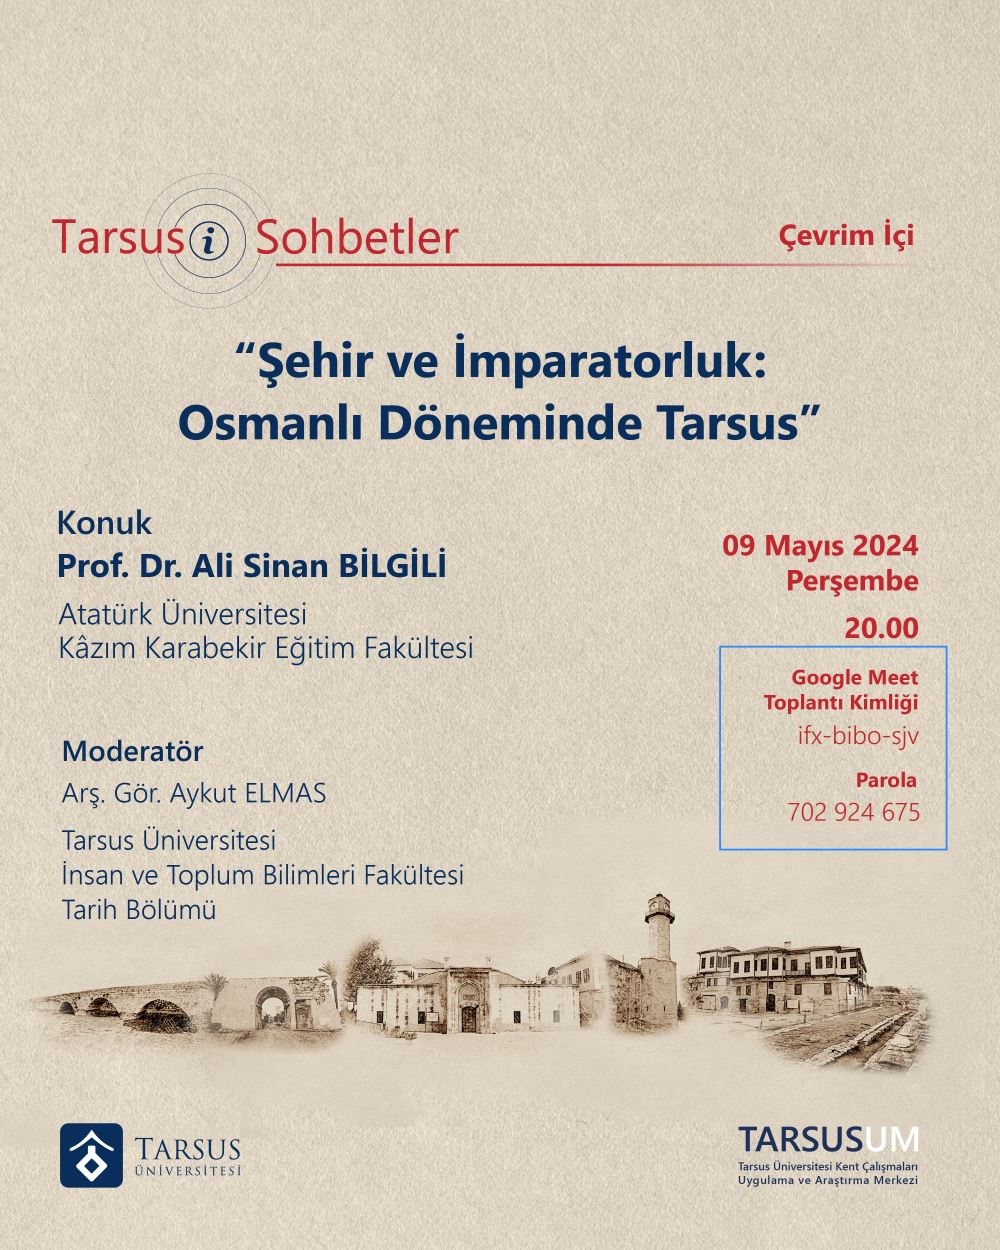 Tarsusi Sohbetler “Şehir ve İmparatorluk: Osmanlı Döneminde Tarsus”